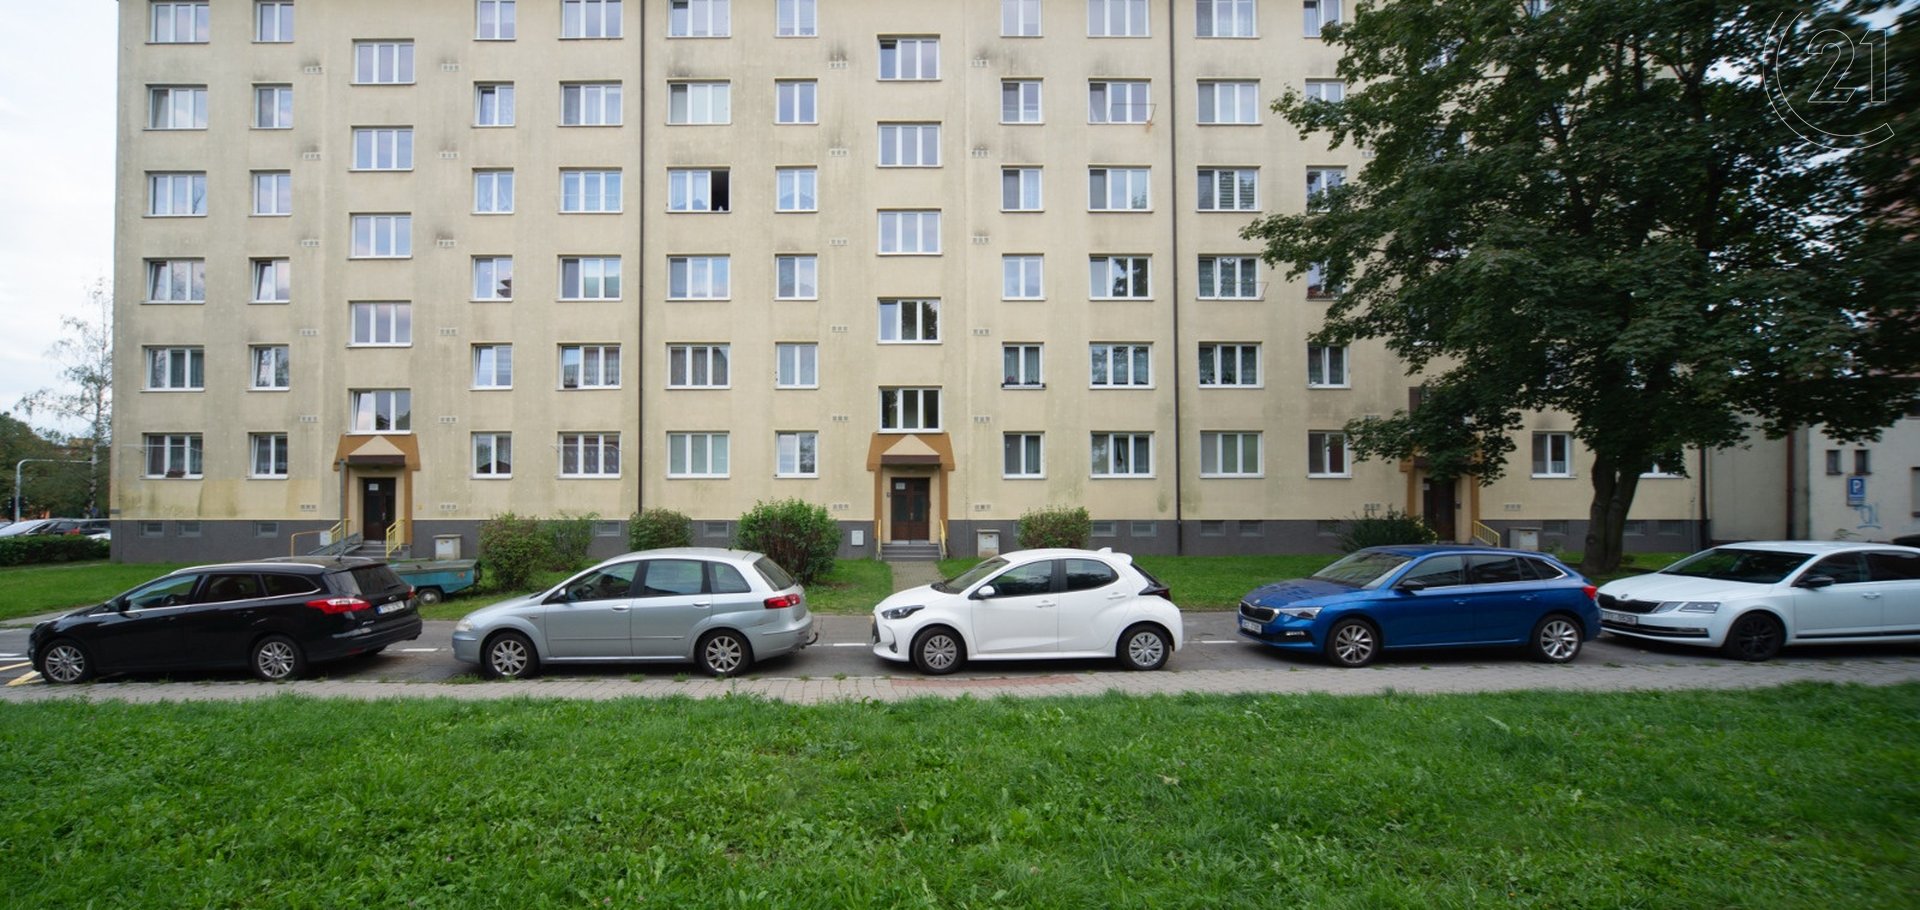 Družstevní byt 1+1 se zasklenou lodžií v centru Poruby v Ostravě.